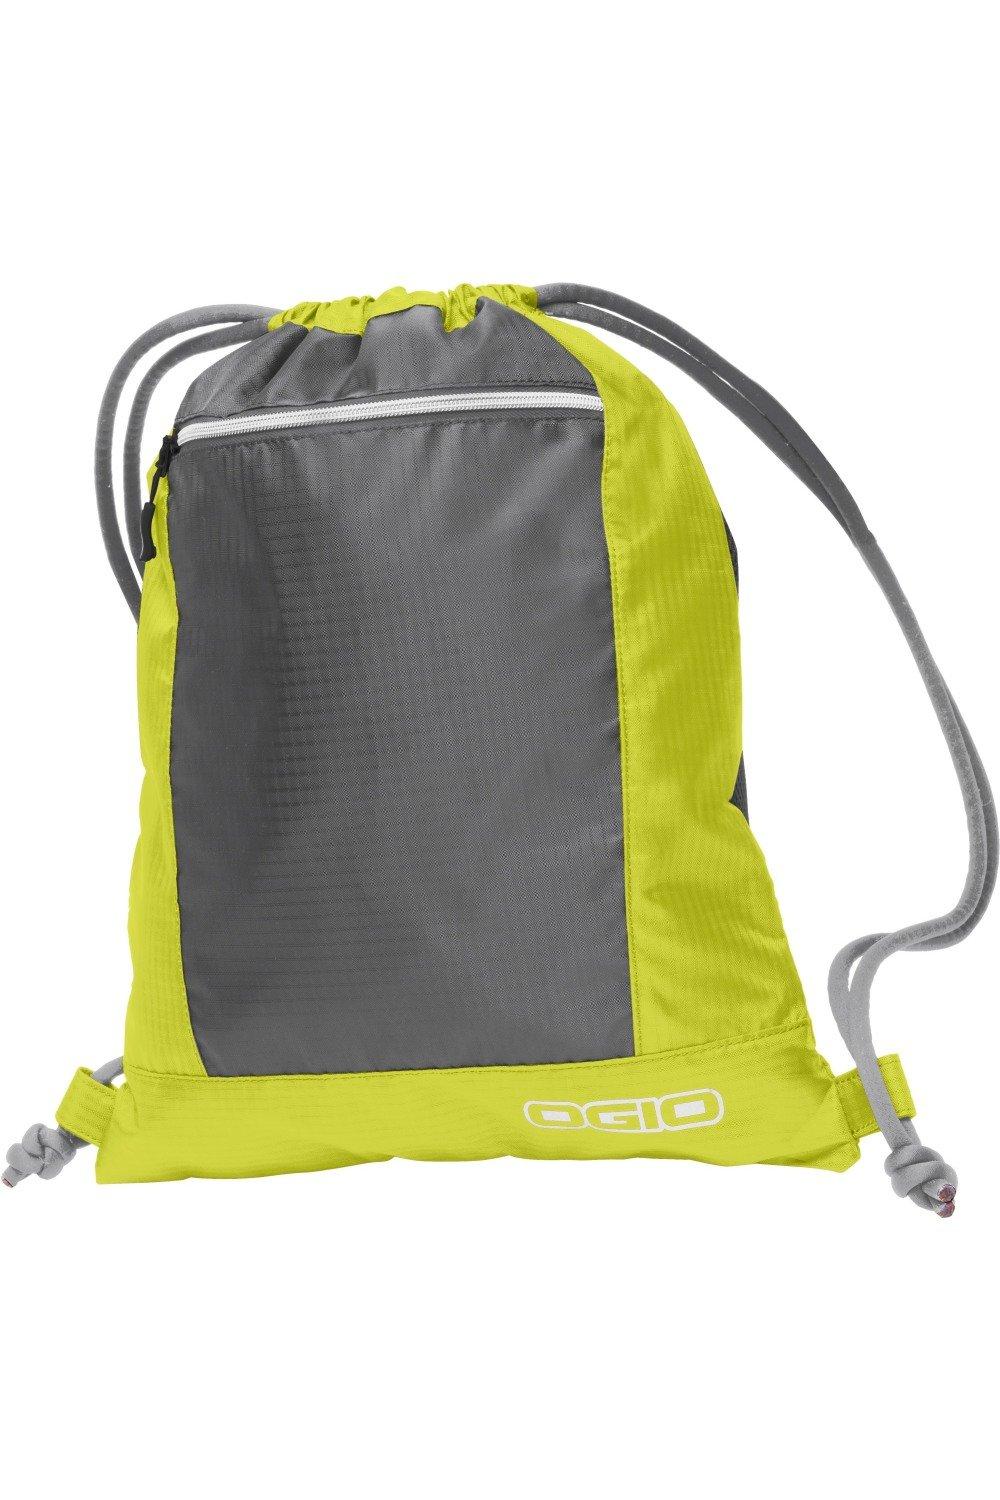 Сумка Endurance Pulse на шнурке (2 шт.) Ogio, желтый рюкзак endurance sonic с одним ремнем 2 шт ogio синий